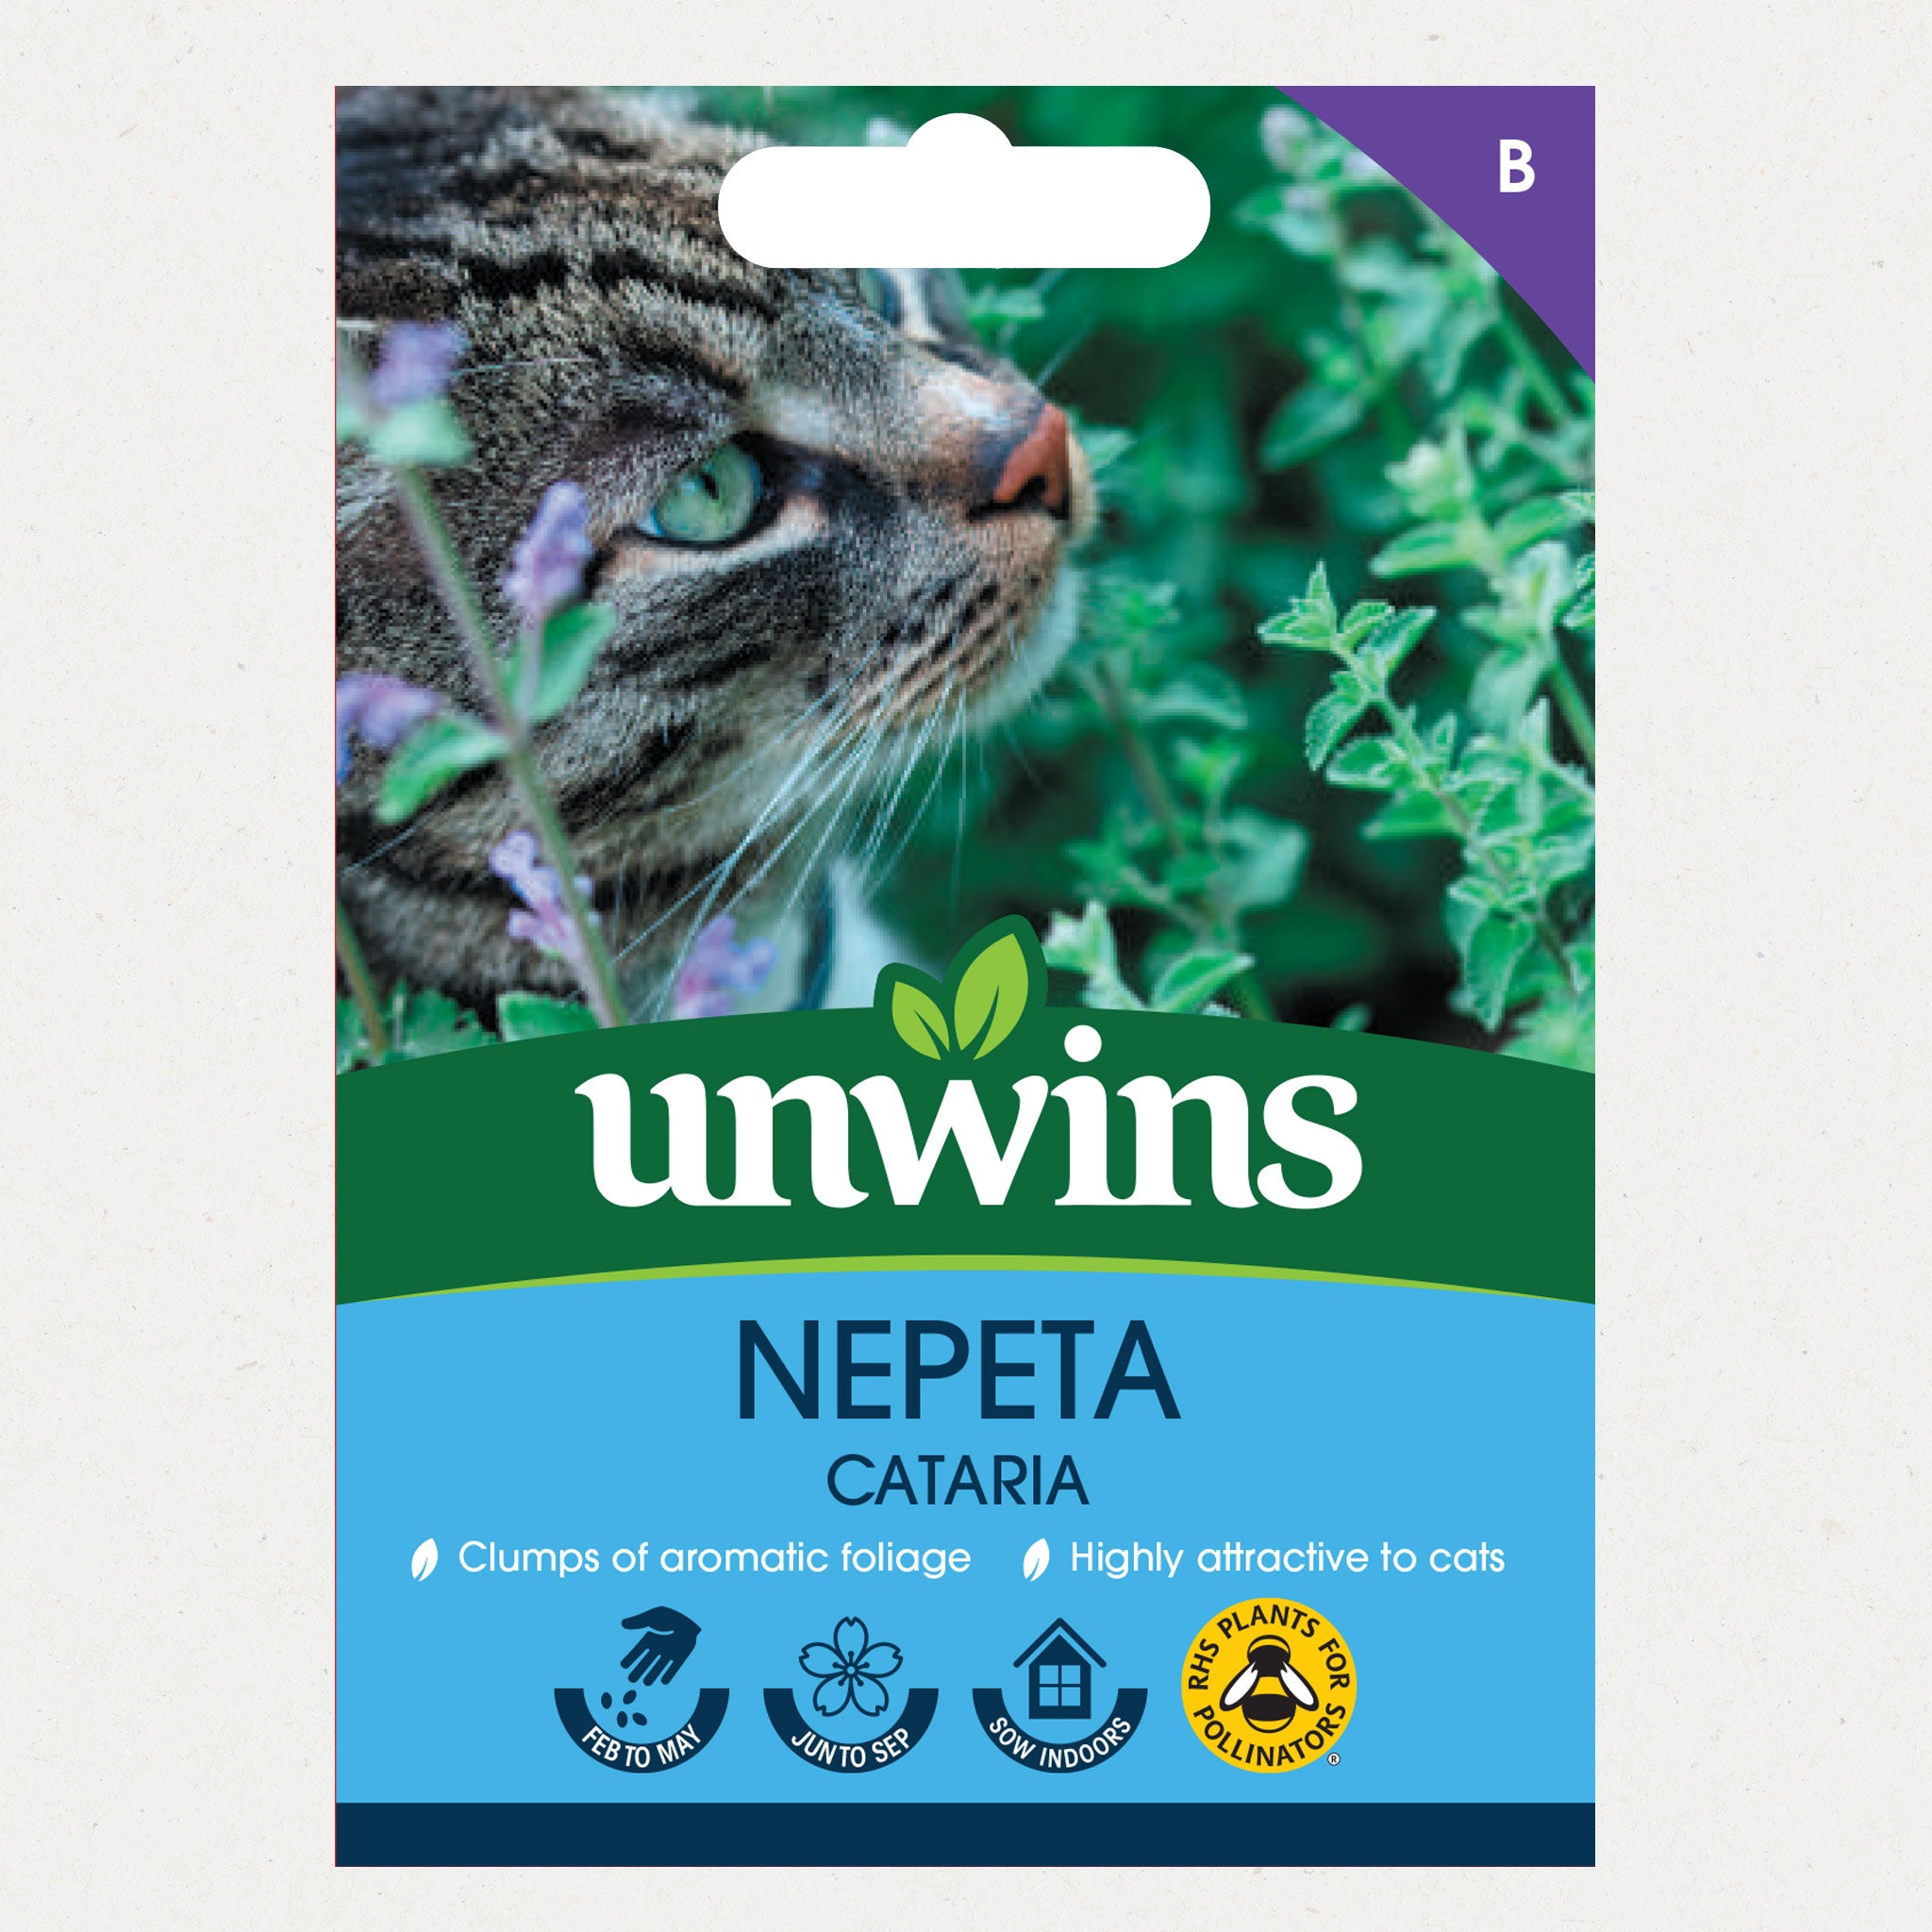 Unwins Nepeta Cataria Seeds